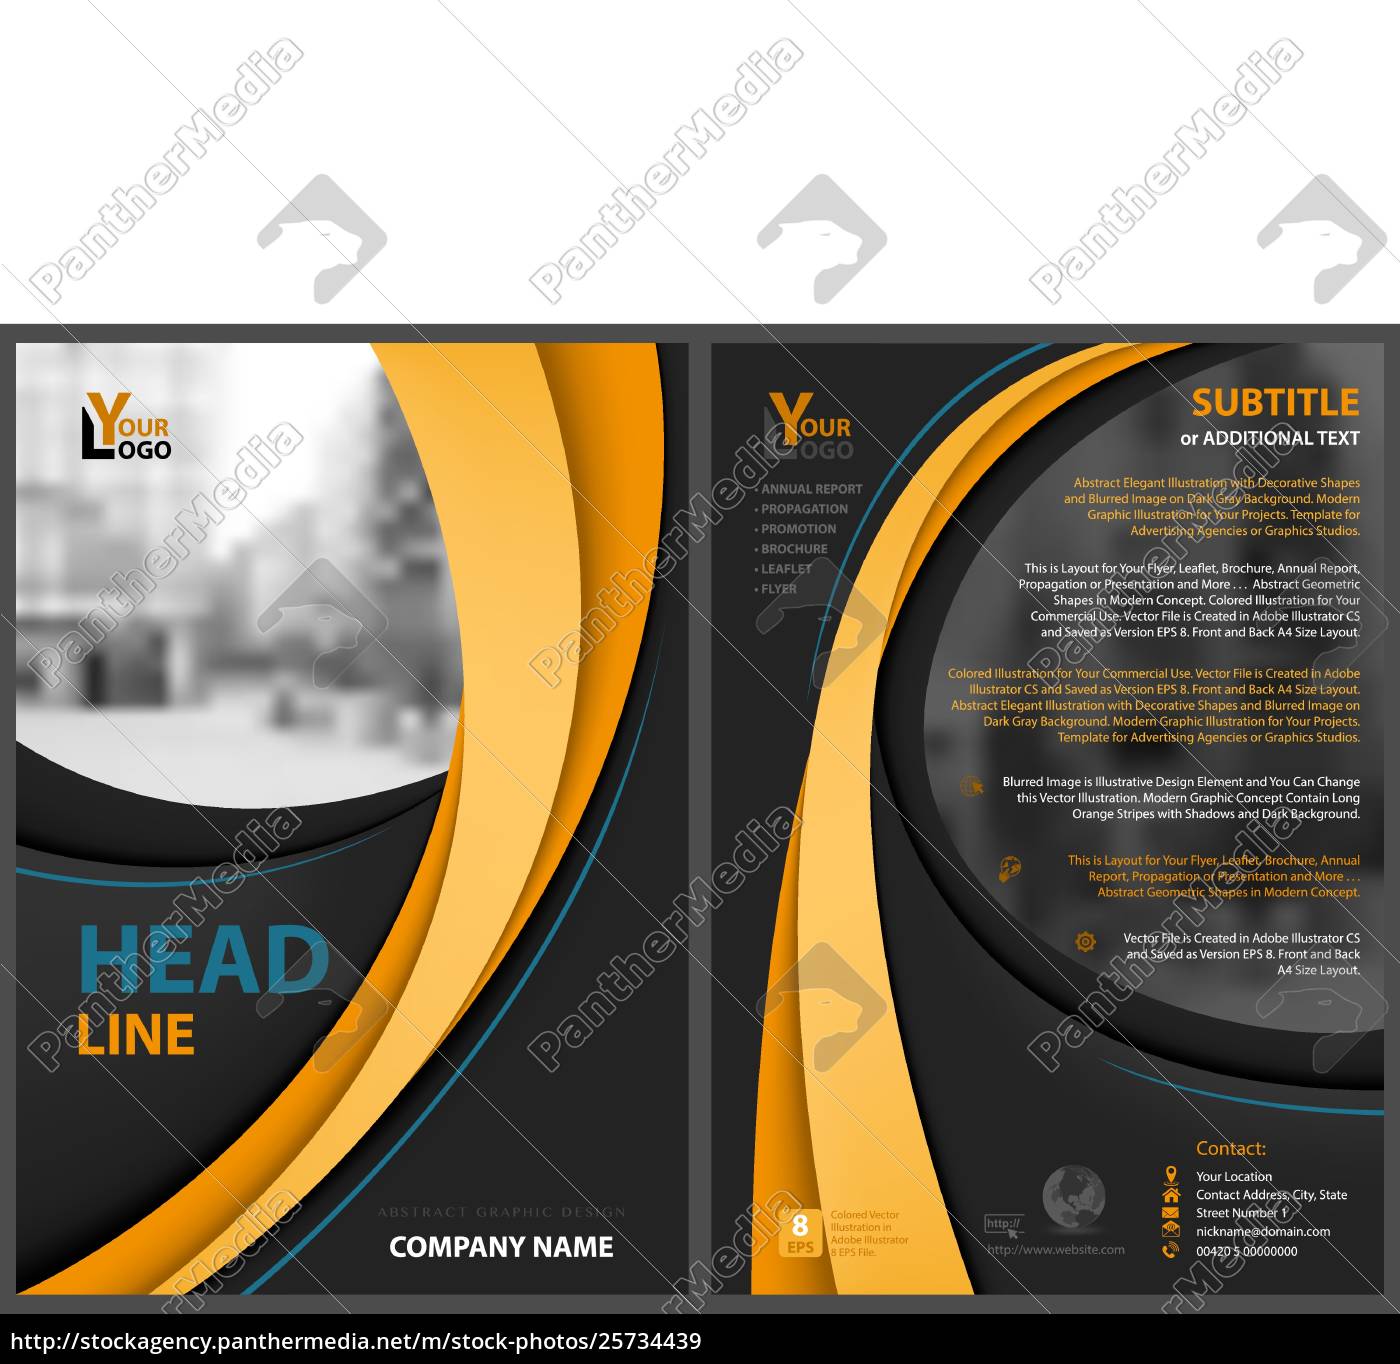 Lizenzfreie Vektorgrafik 20 - schwarzer flyer vorlage mit With Regard To Adobe Illustrator Flyer Template